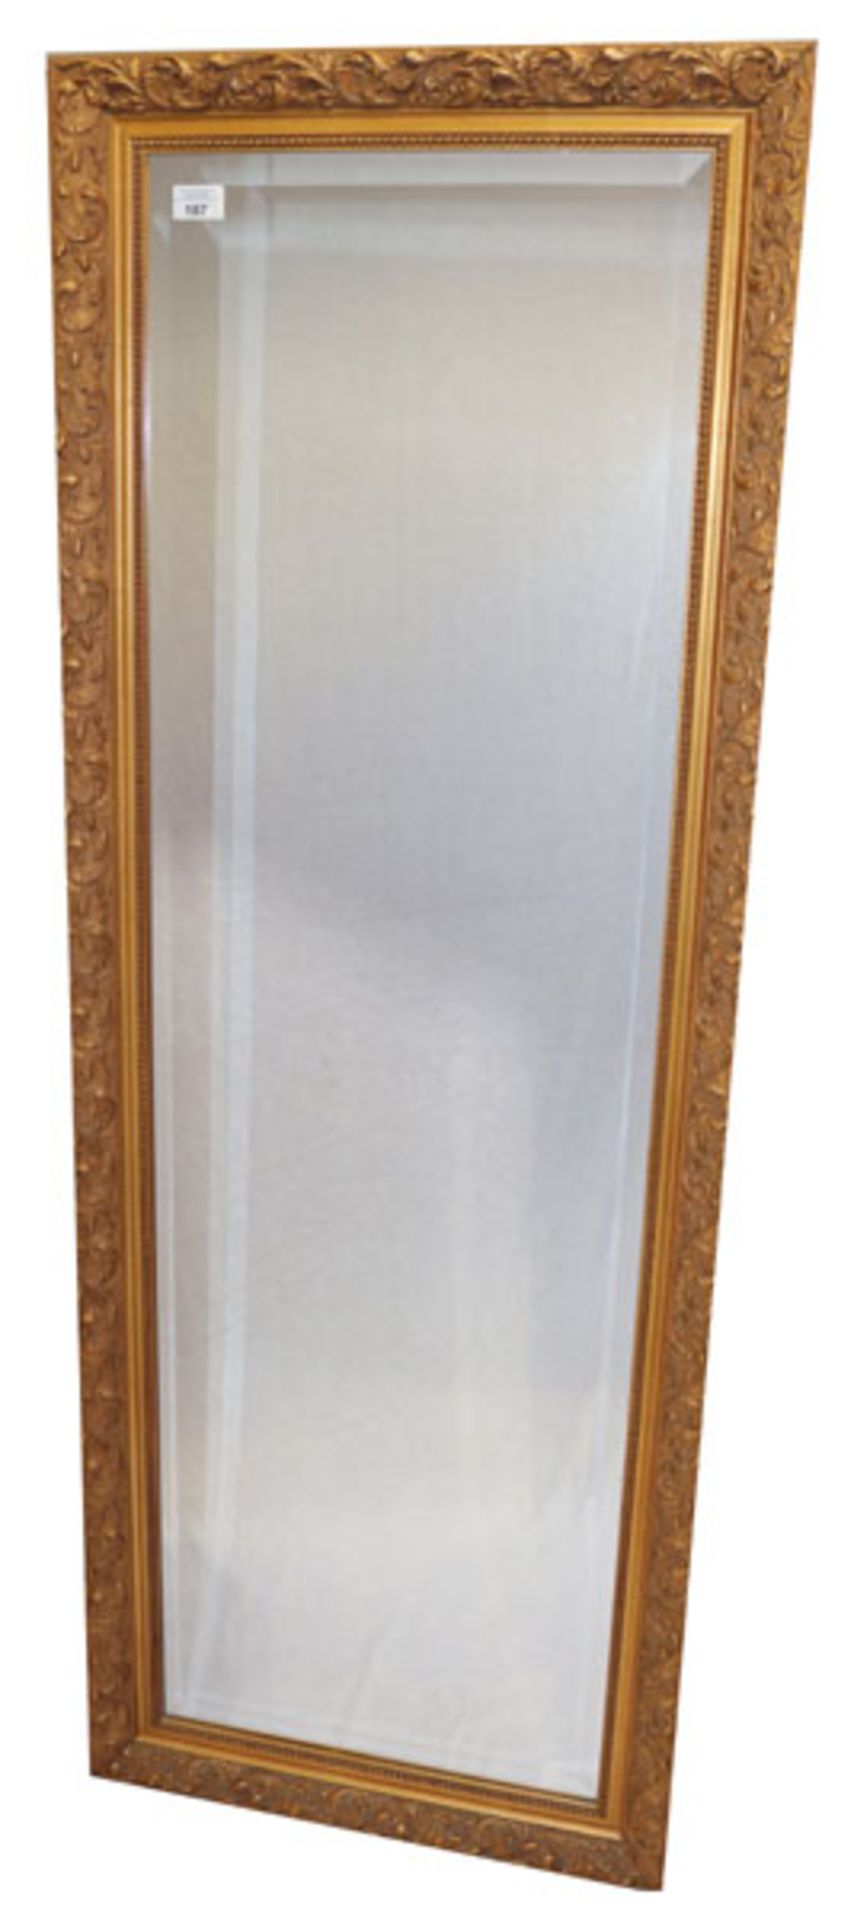 Wandspiegel in Goldrahmen, Spiegel mit Facettenschliff, Rahmen beschädigt und geklebt, 151 cm x 56